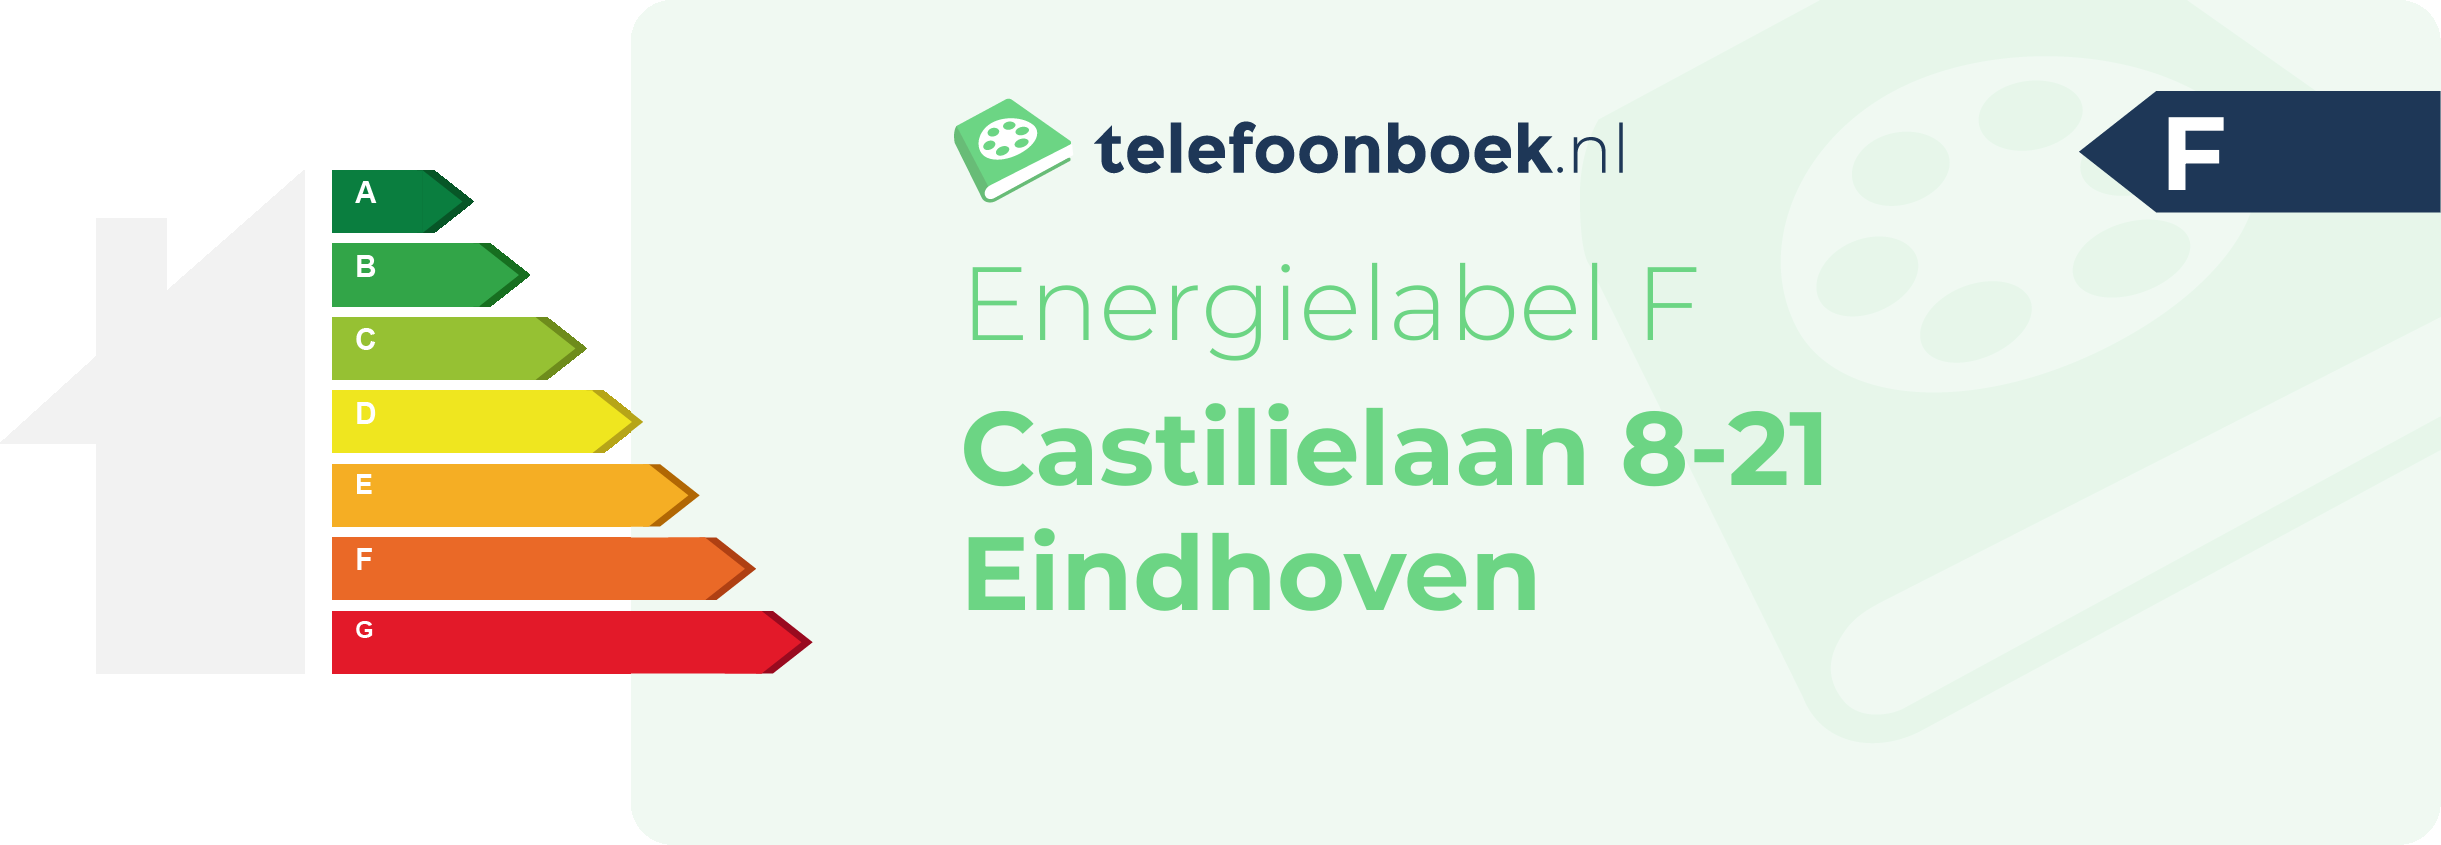 Energielabel Castilielaan 8-21 Eindhoven